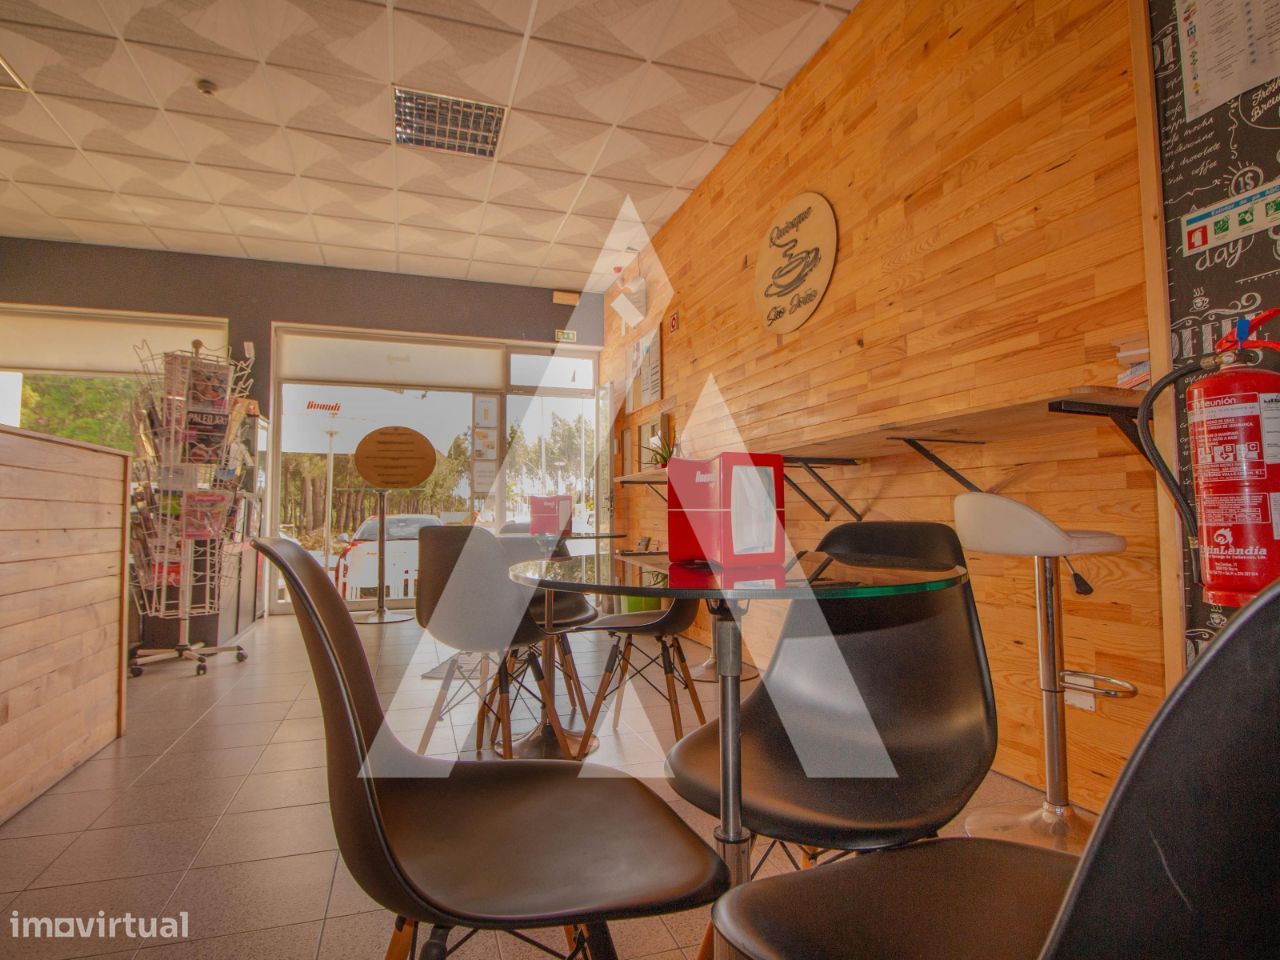 Café/Snack Bar e Quiosque para trespasse em Vagos